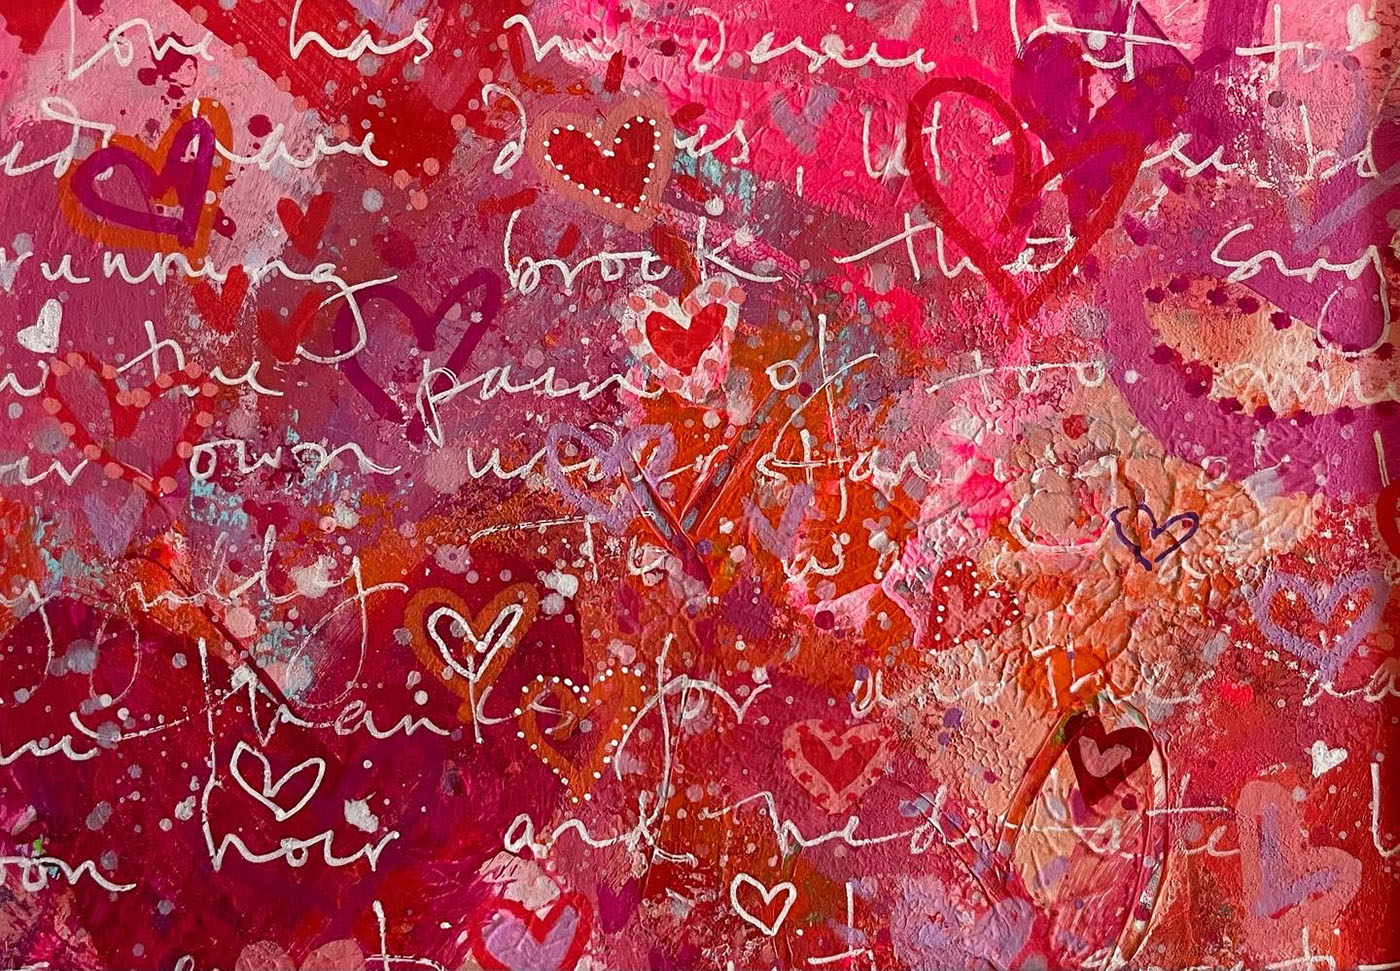 5. Cartas de amor: Gibran On Love, 13x20cm, acrílico sobre papel, 2022